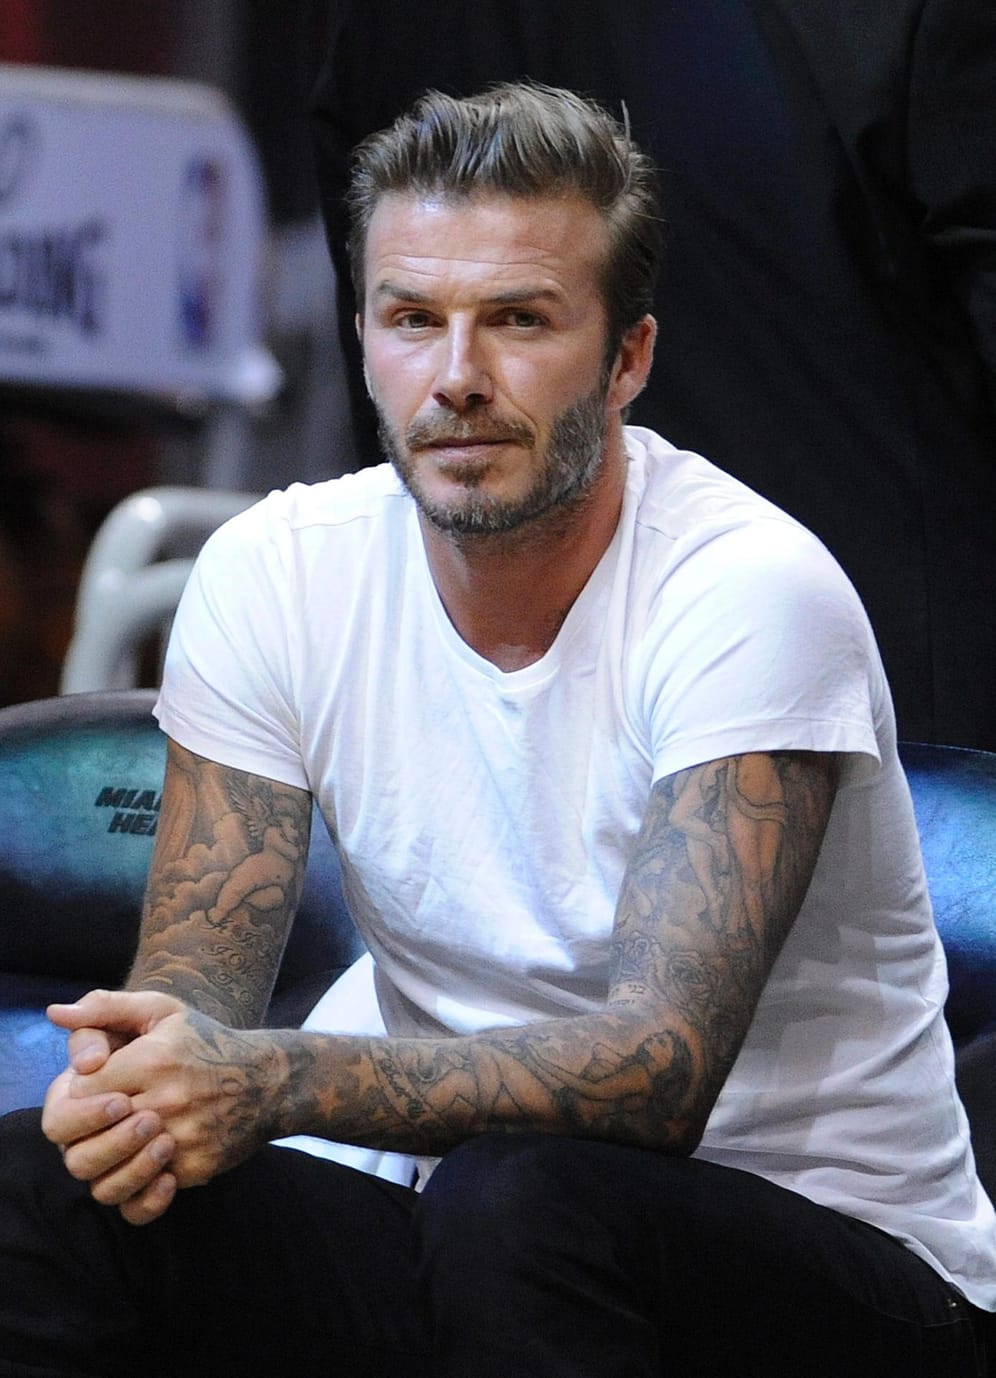 Ja selbst Mode-Ikone und Fußballer David Beckham trägt Geheimratsecken. Aber er weiß, wie man sie richtig in Szene setzt.